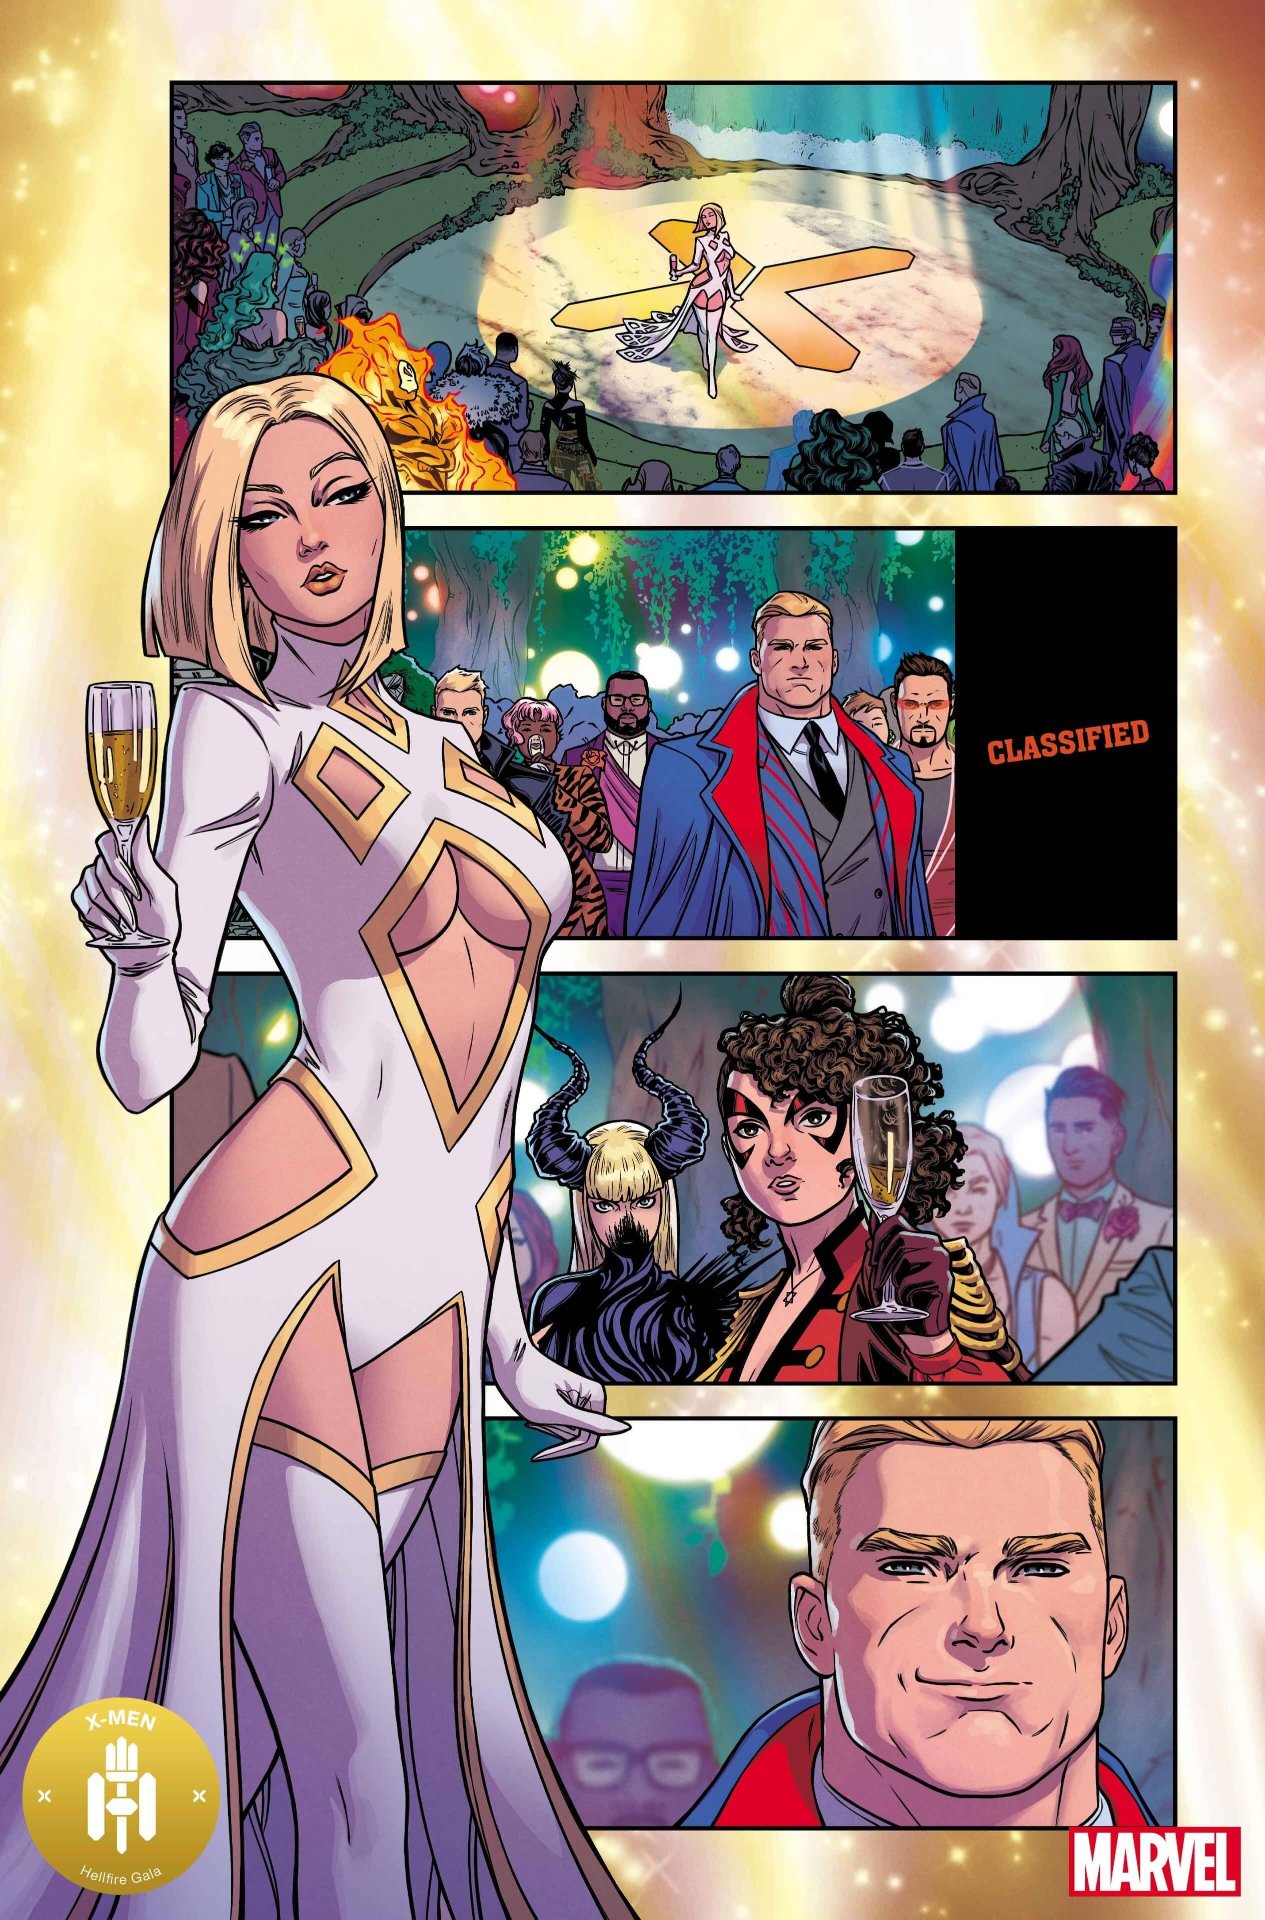 X-Men: Hellfire Gala #1